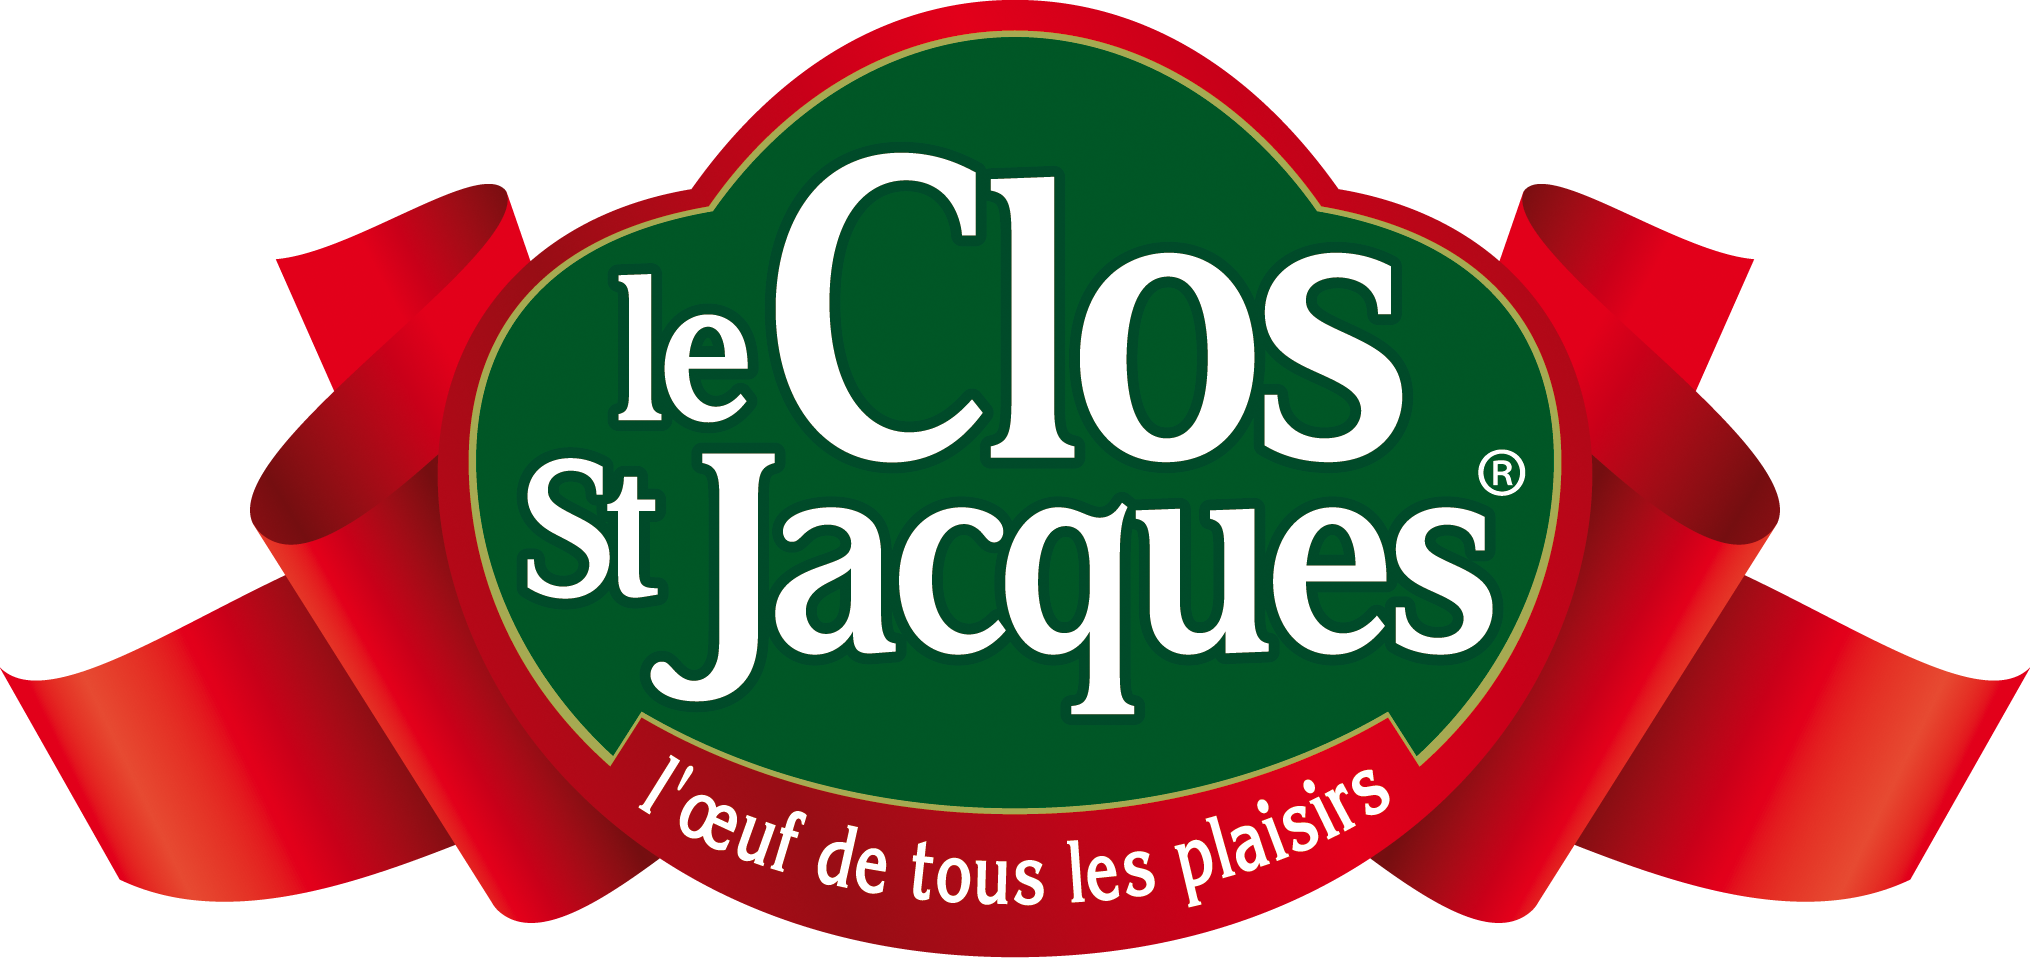 Le Clos St Jacques